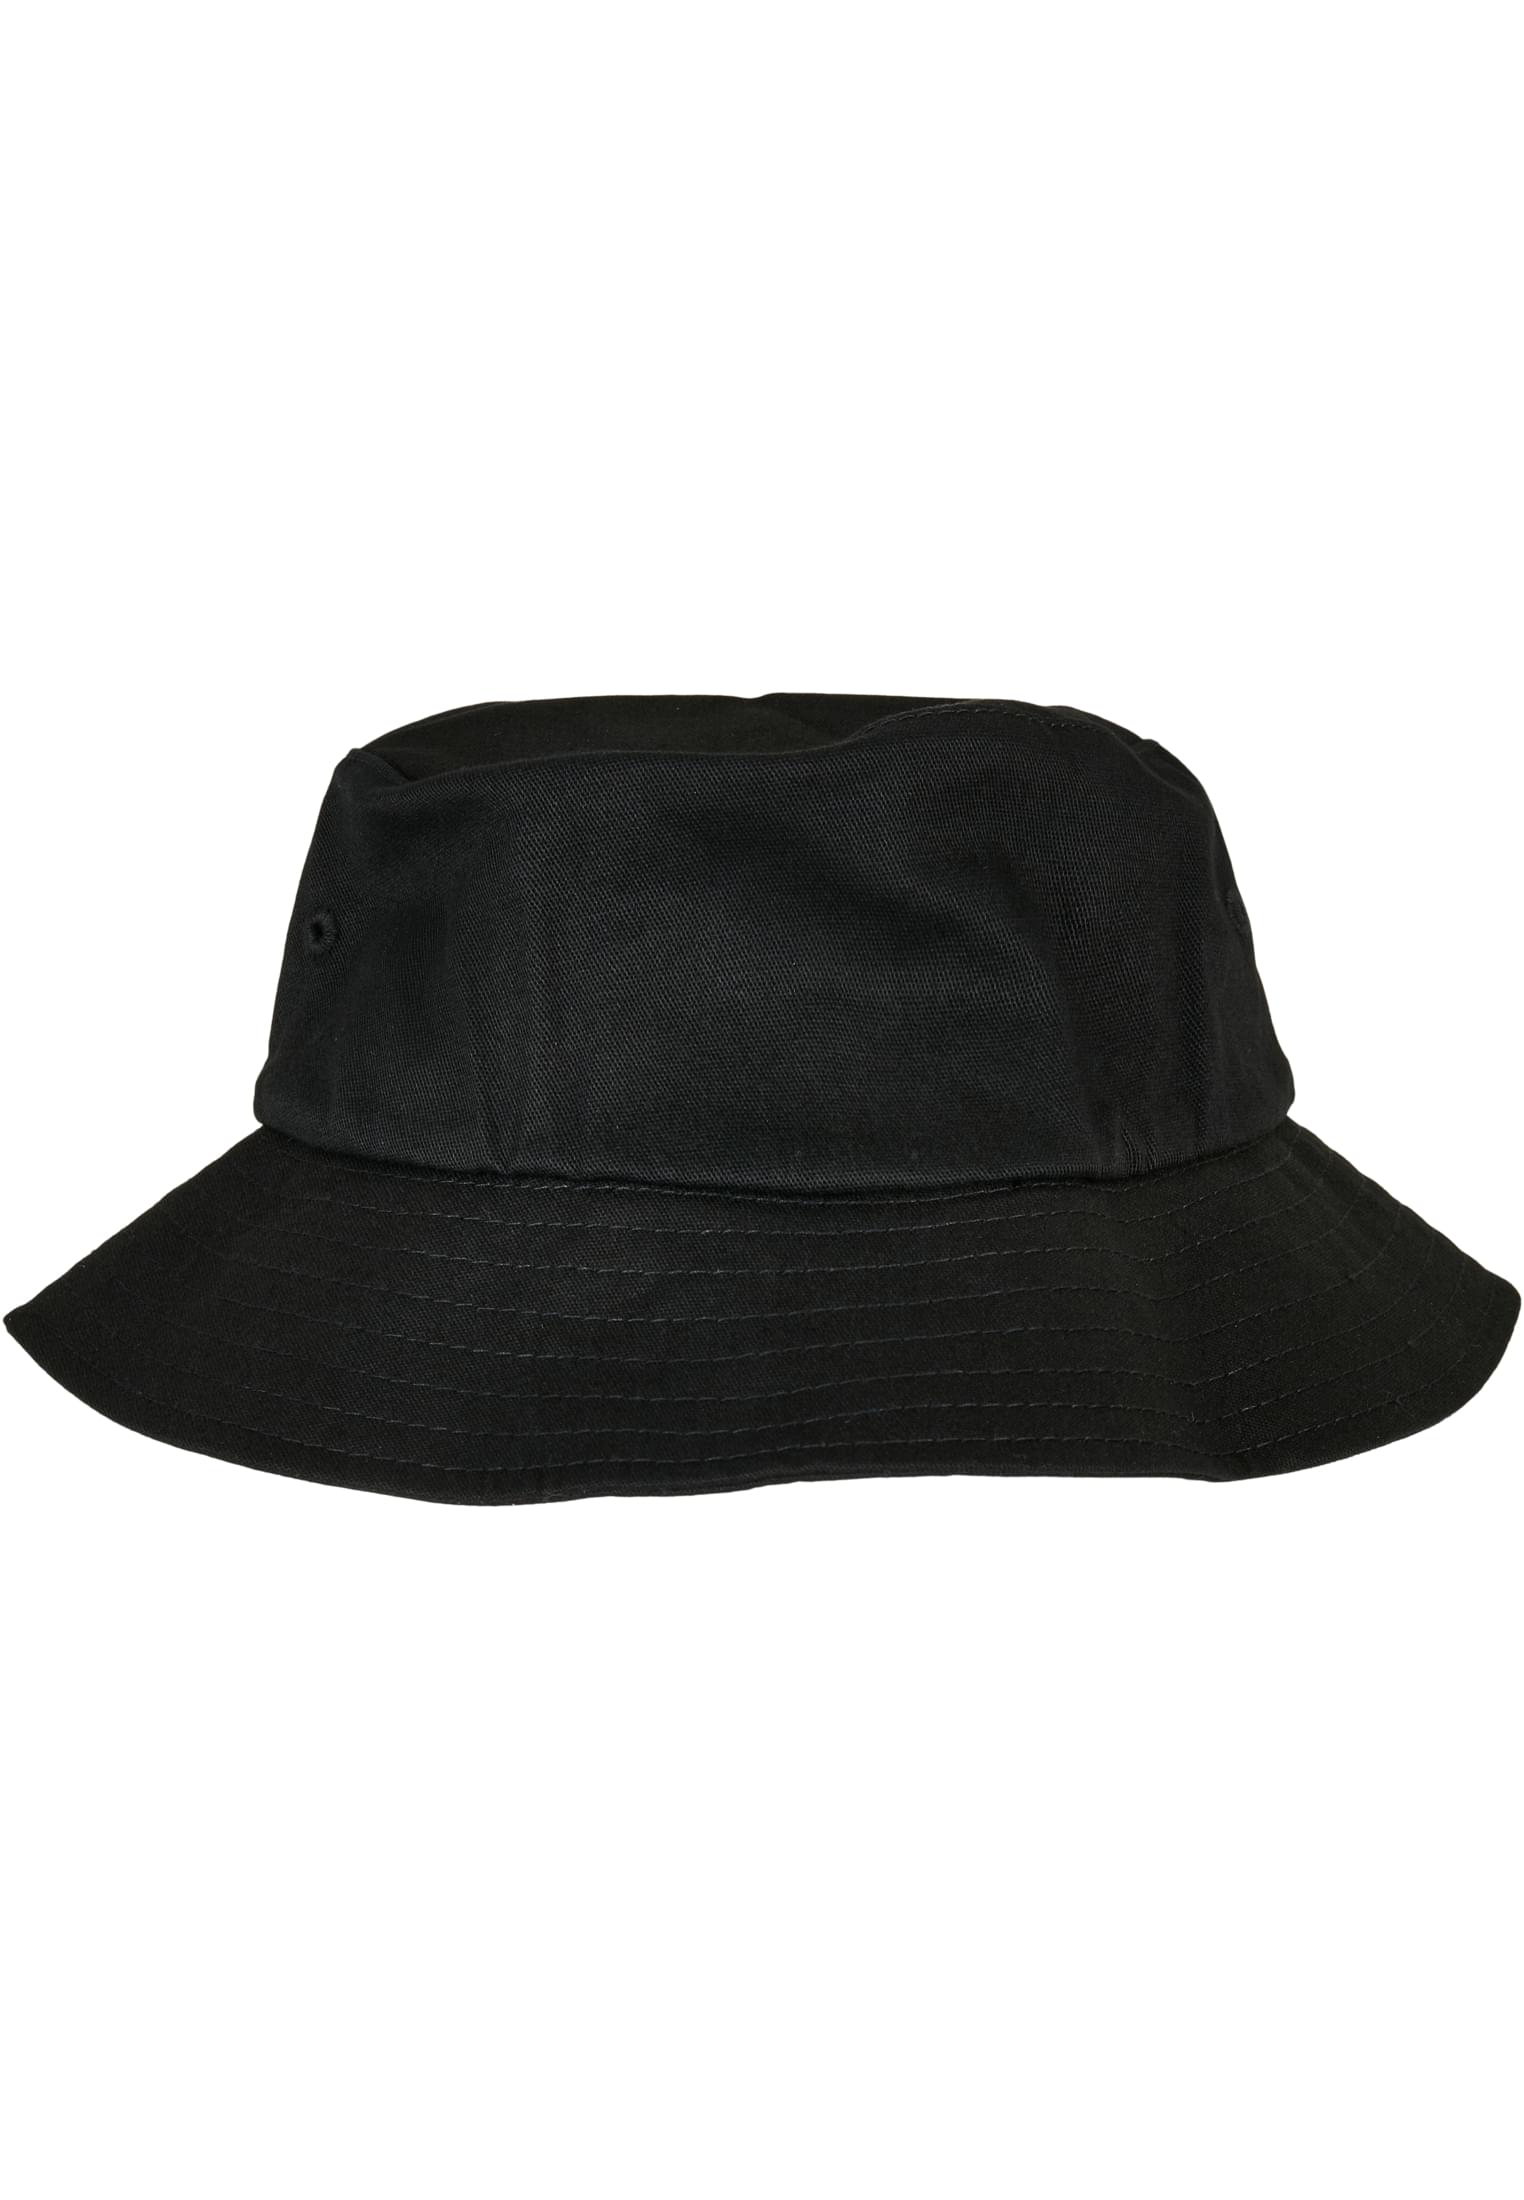 Twill Cotton Hat Kids-5003KH Bucket Flexfit